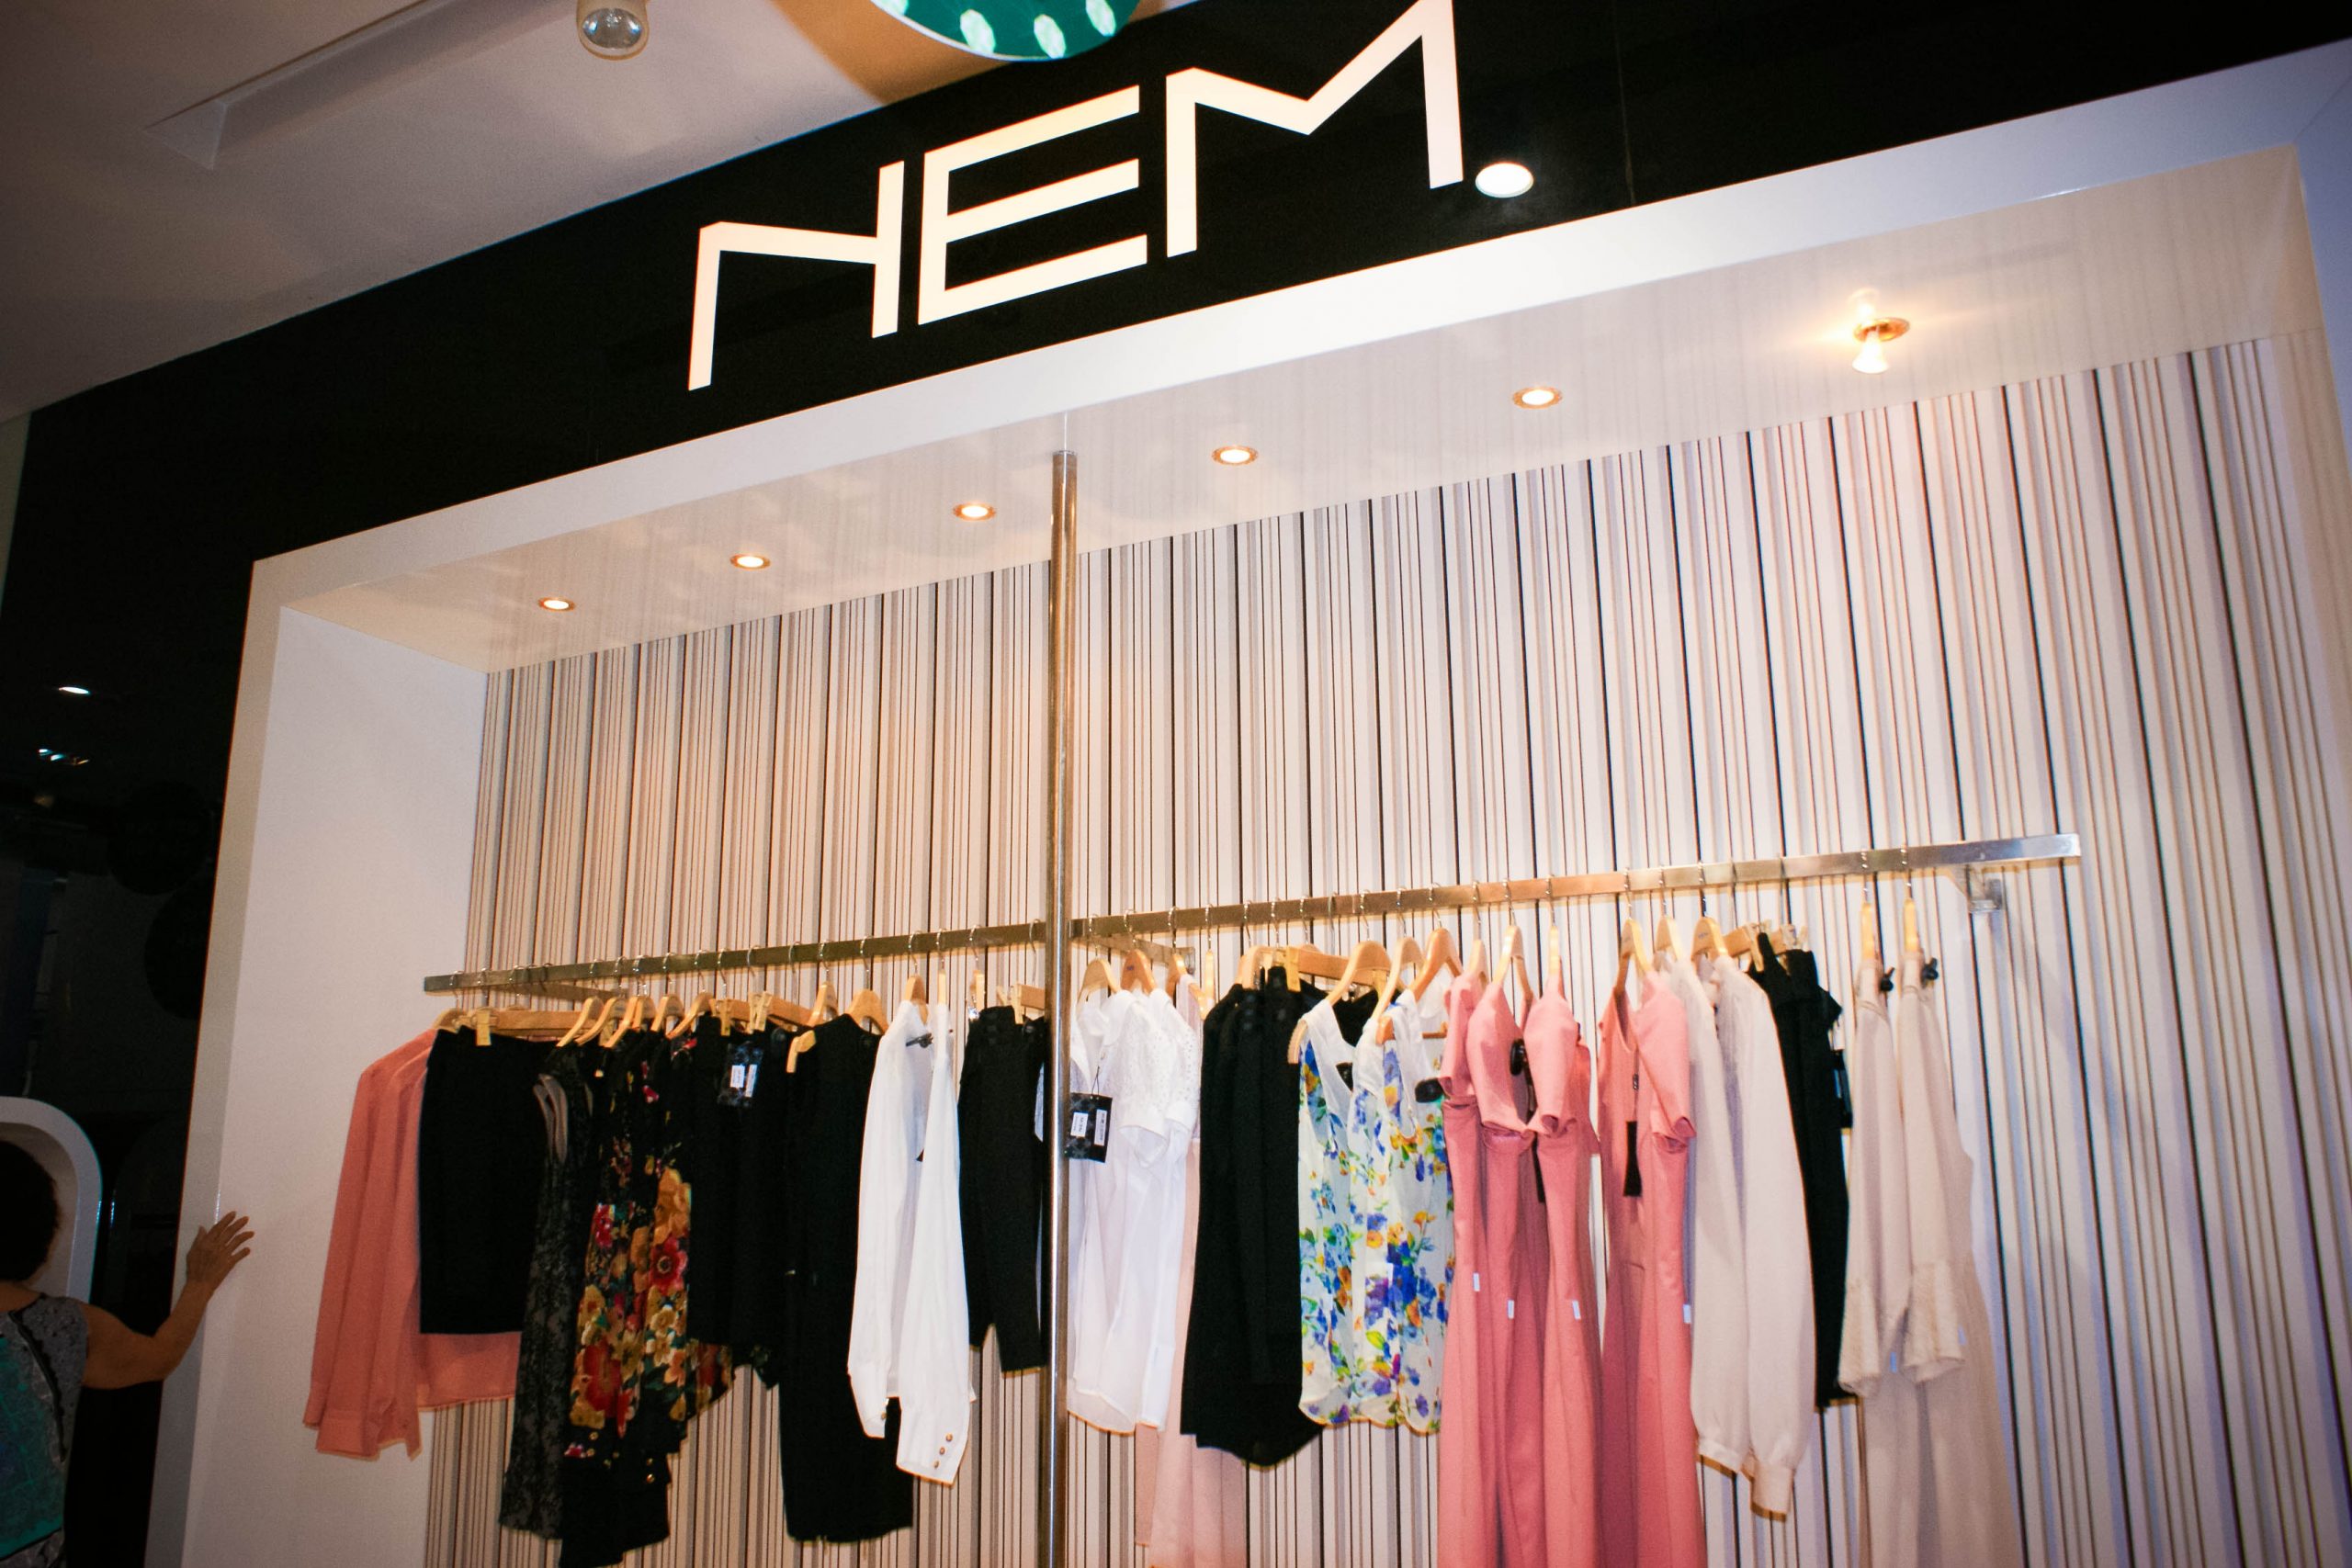 Chính sách đổi/ trả của cửa hàng NEM